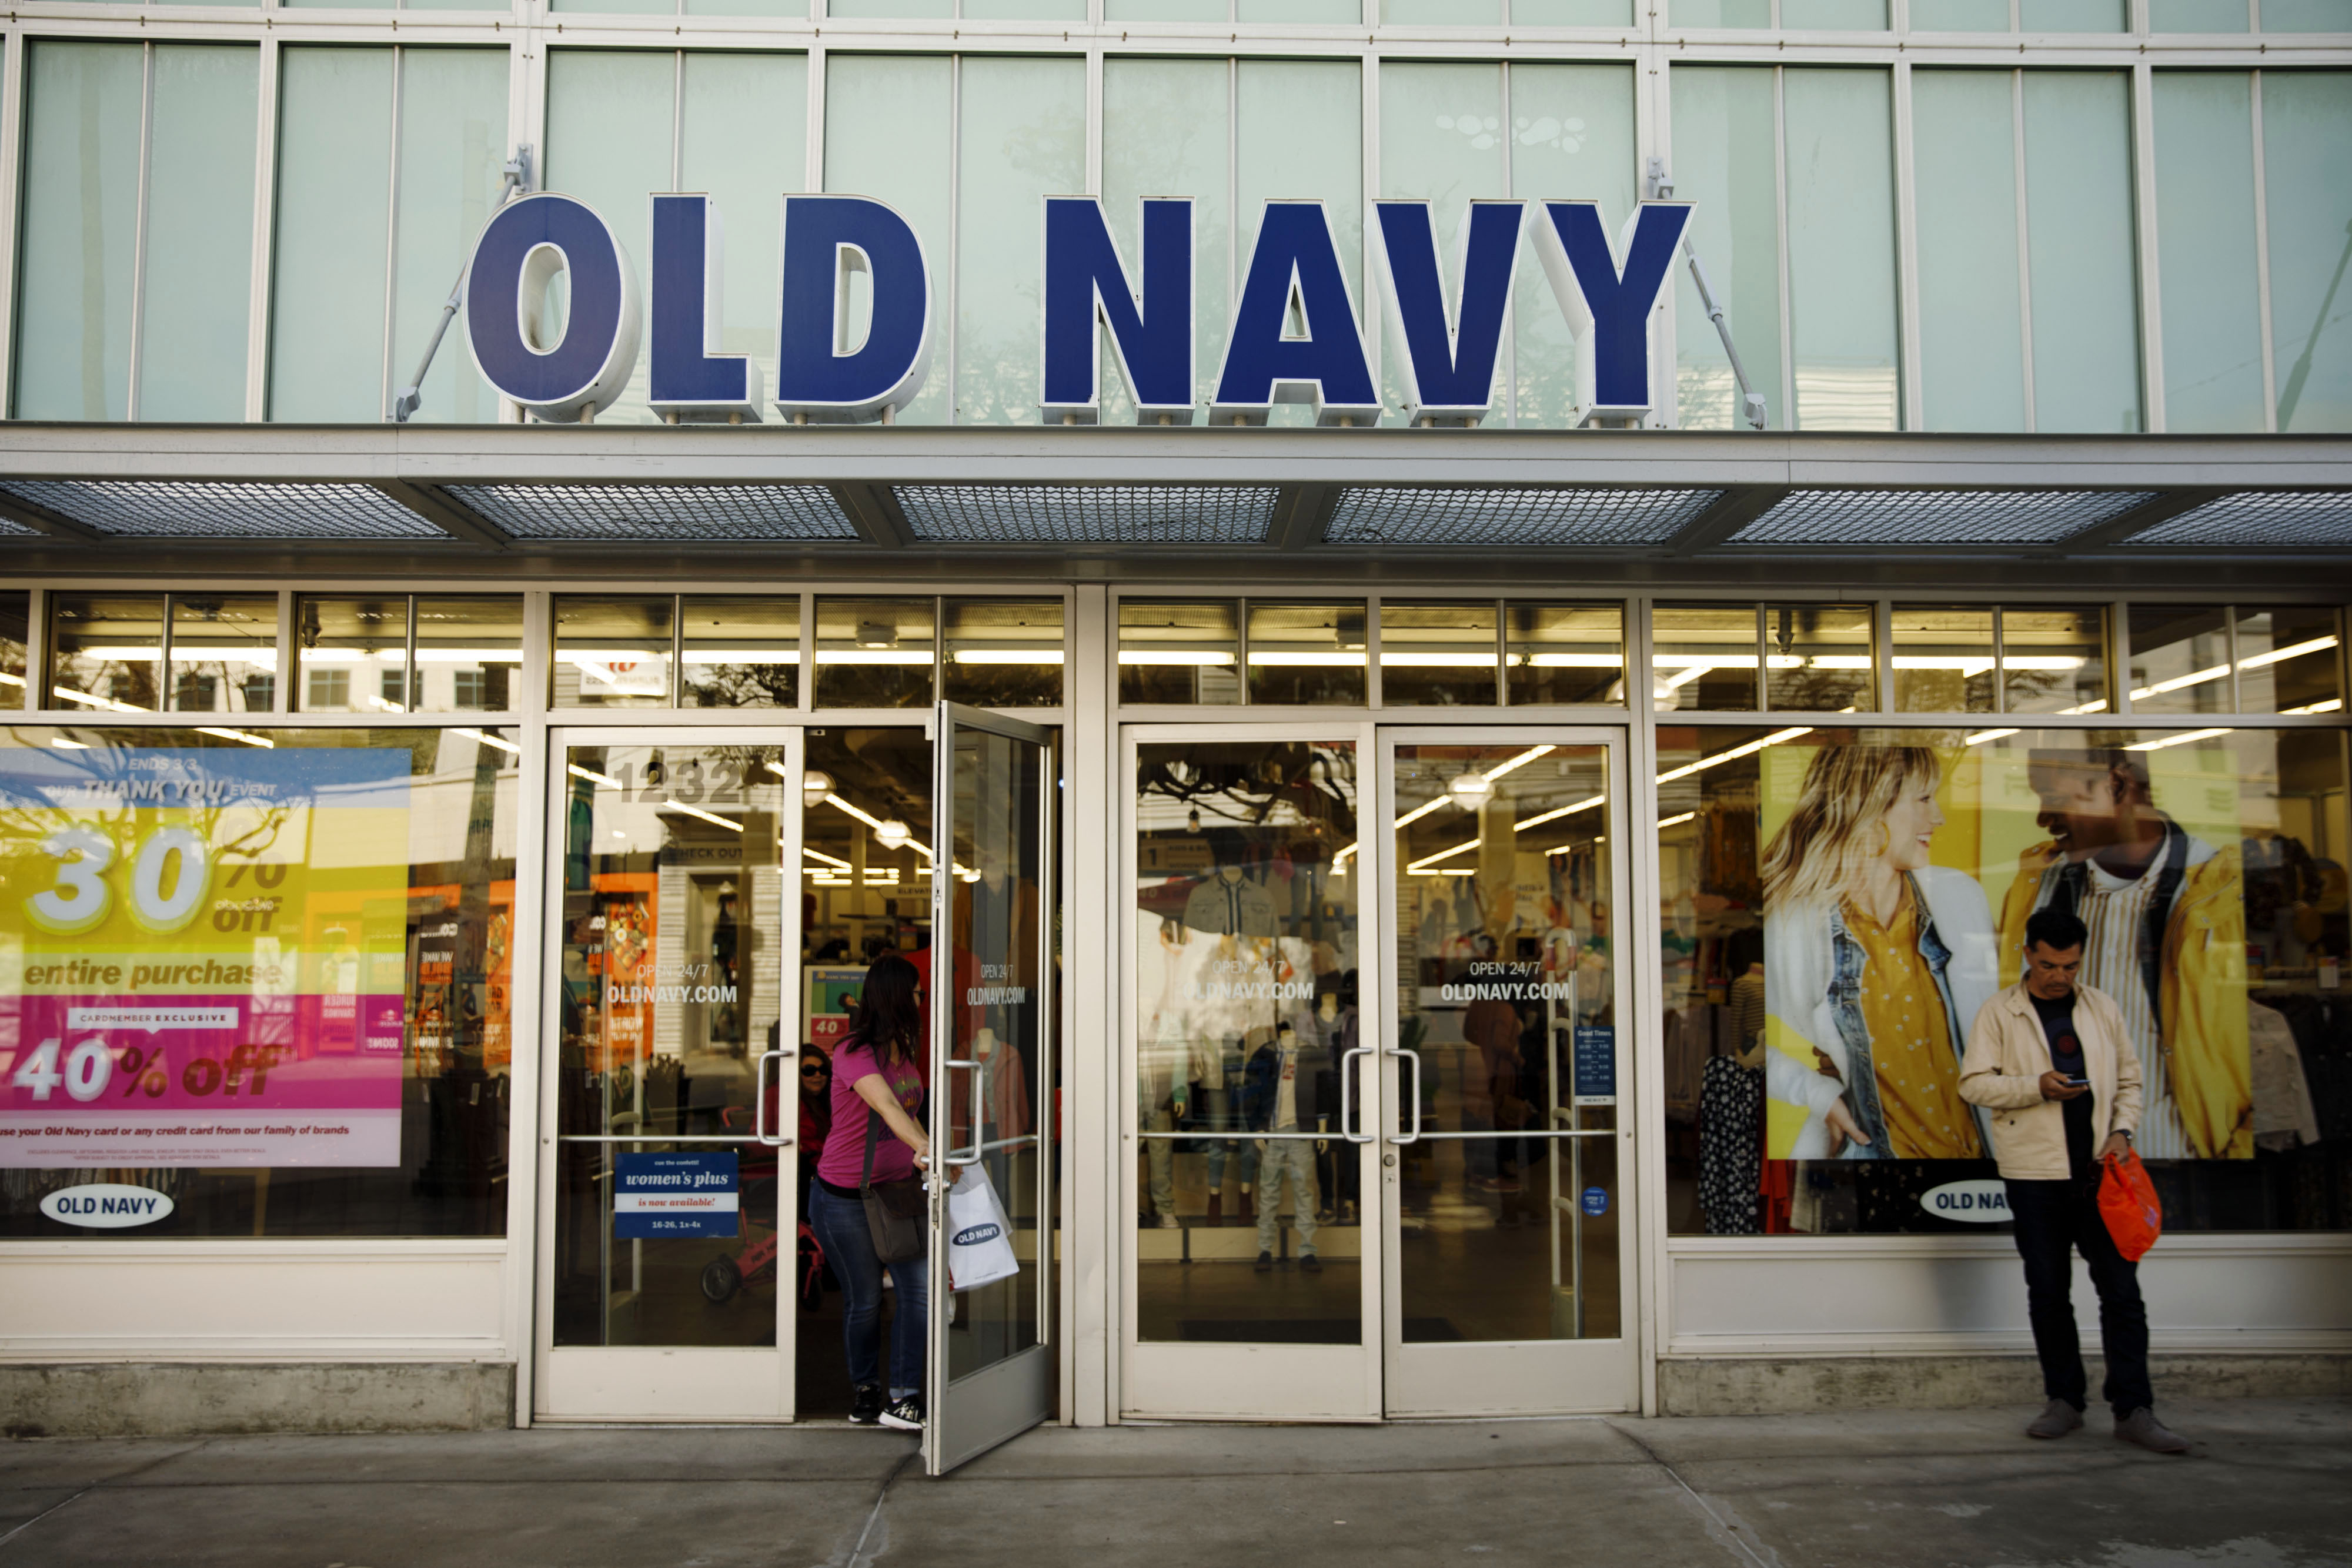 Old Navy Careers - Old Navy Careers Gap Inc.